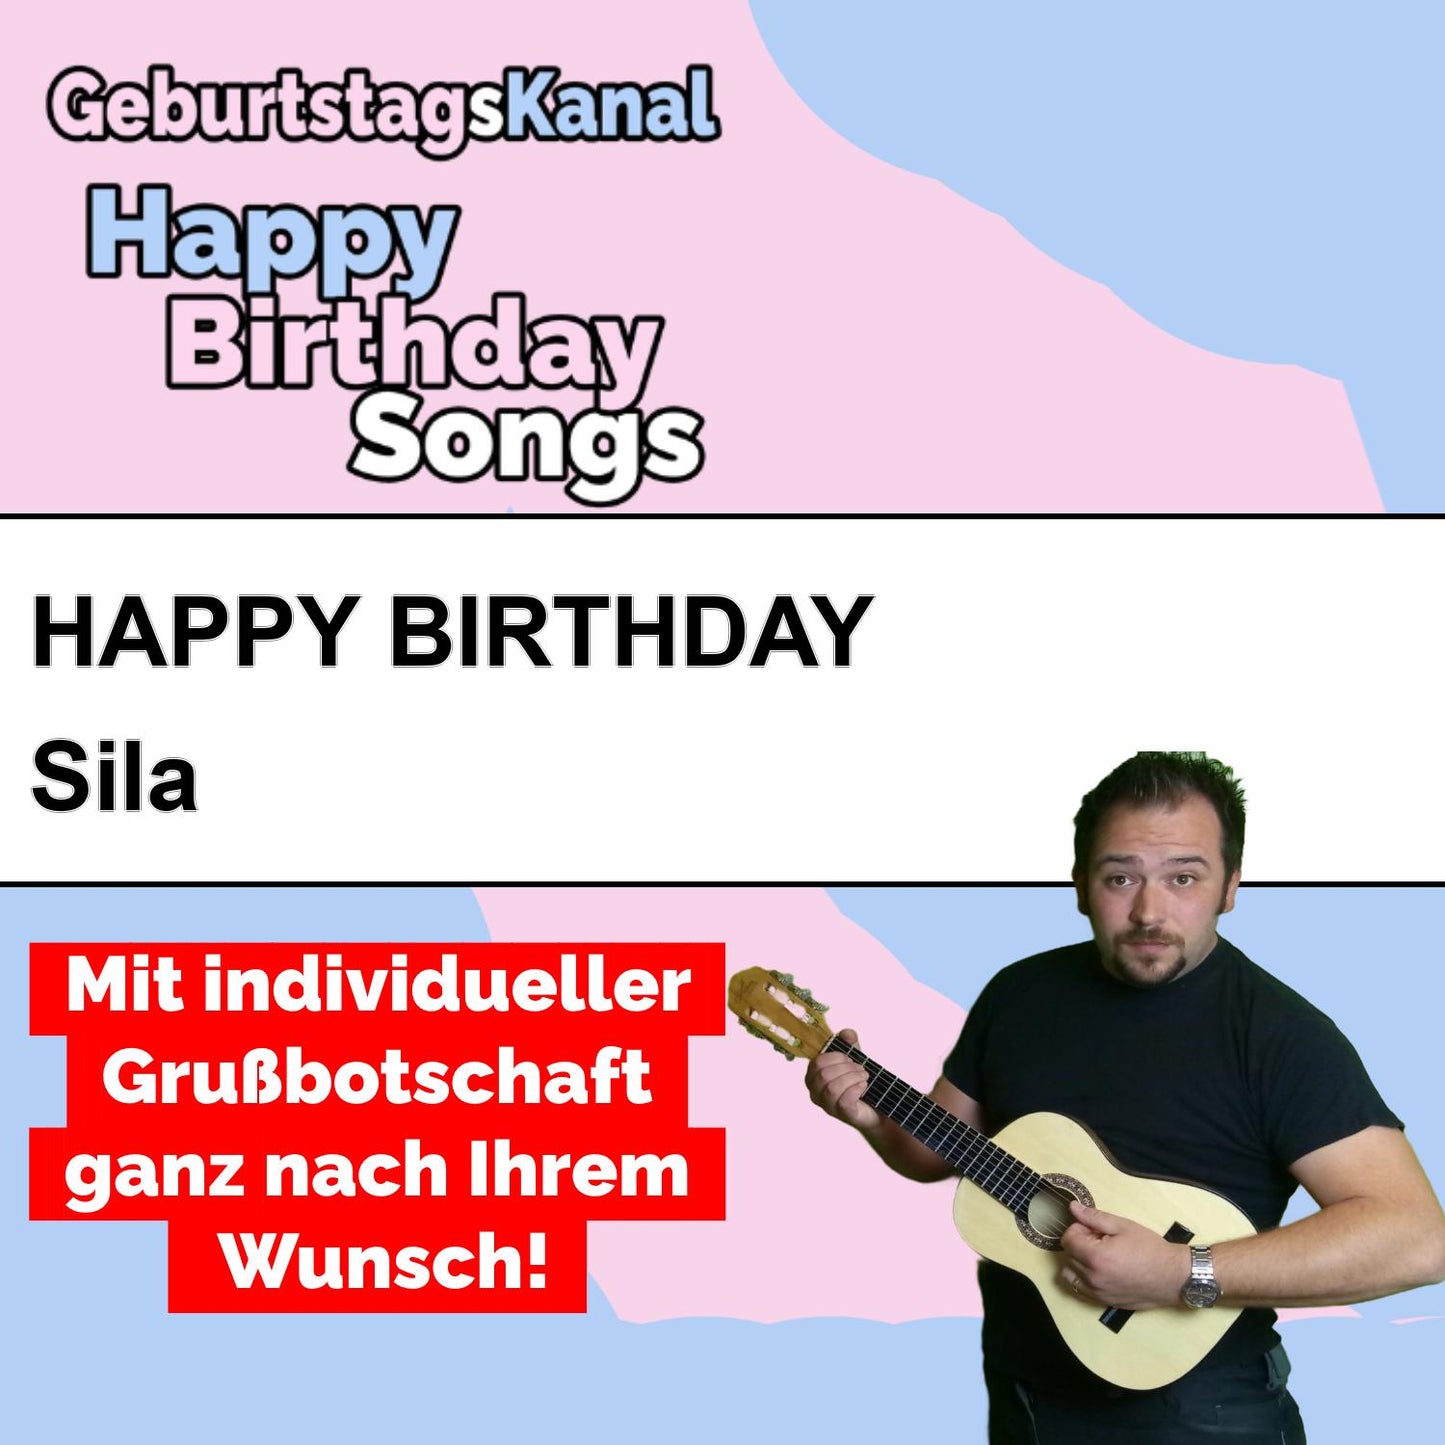 Produktbild Happy Birthday to you Sila mit Wunschgrußbotschaft